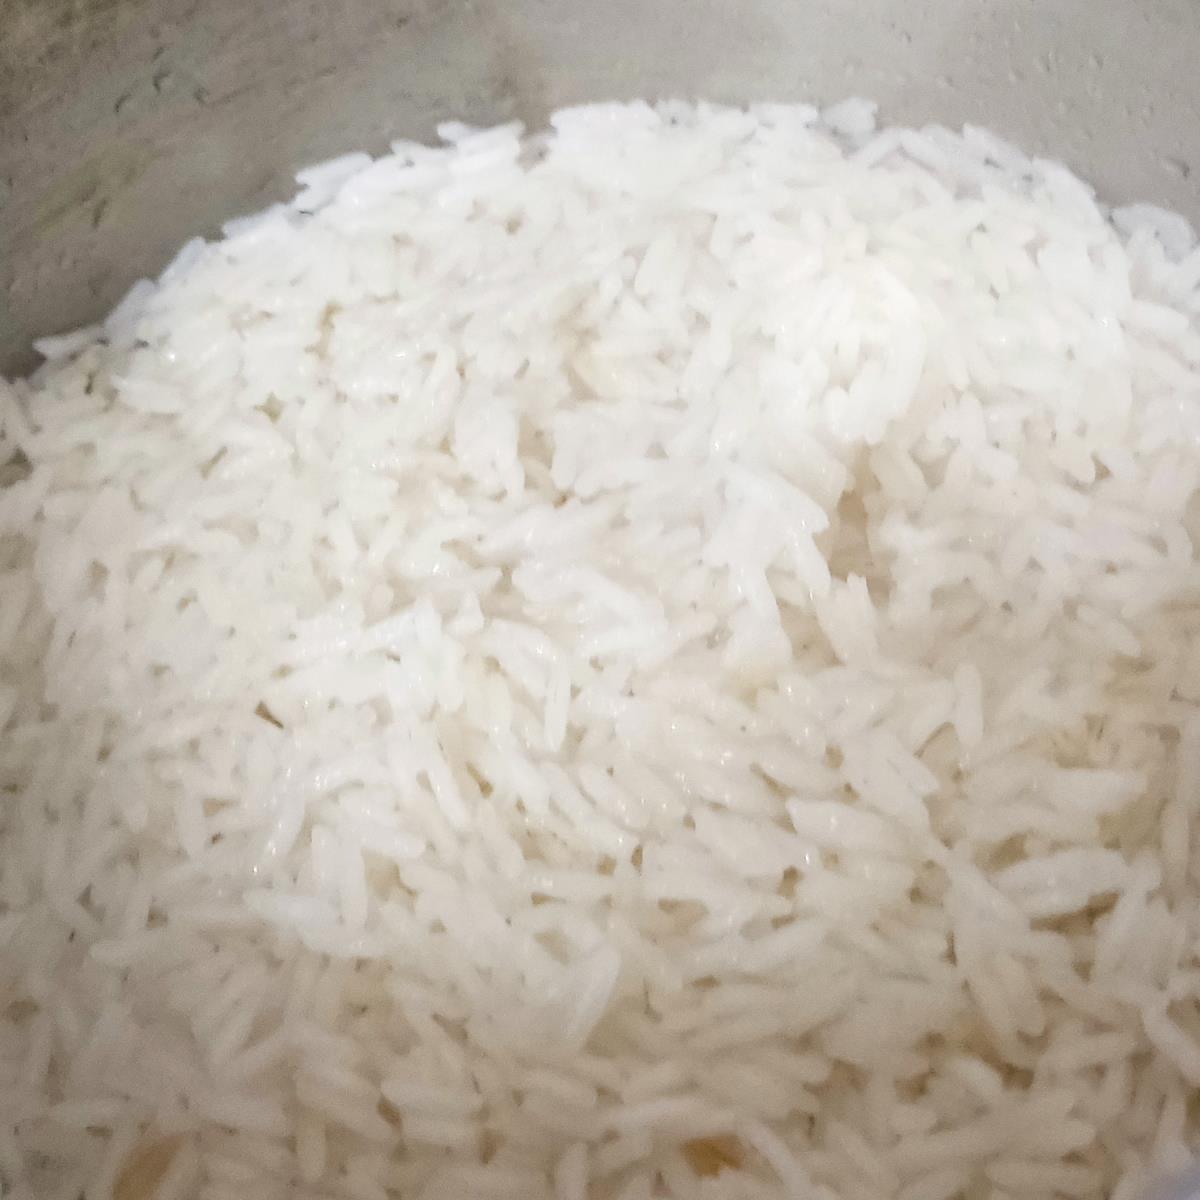 אורז בסמטי